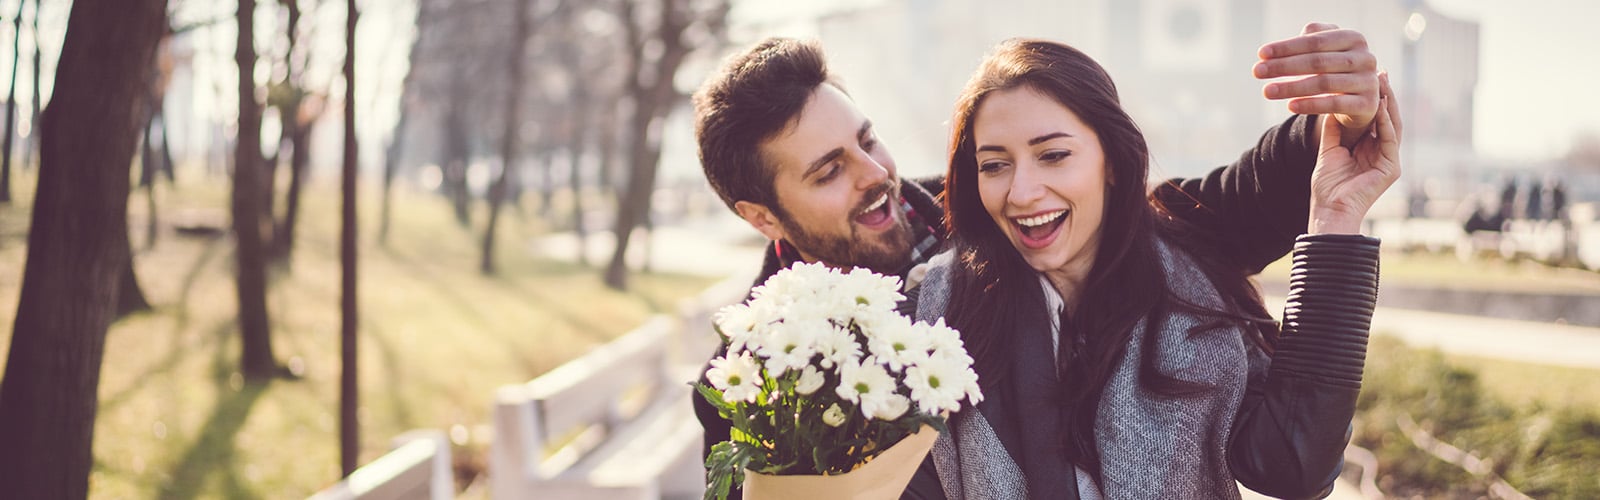 Mann mit Bart übergibt Frau weiße Blumen, beide lachen